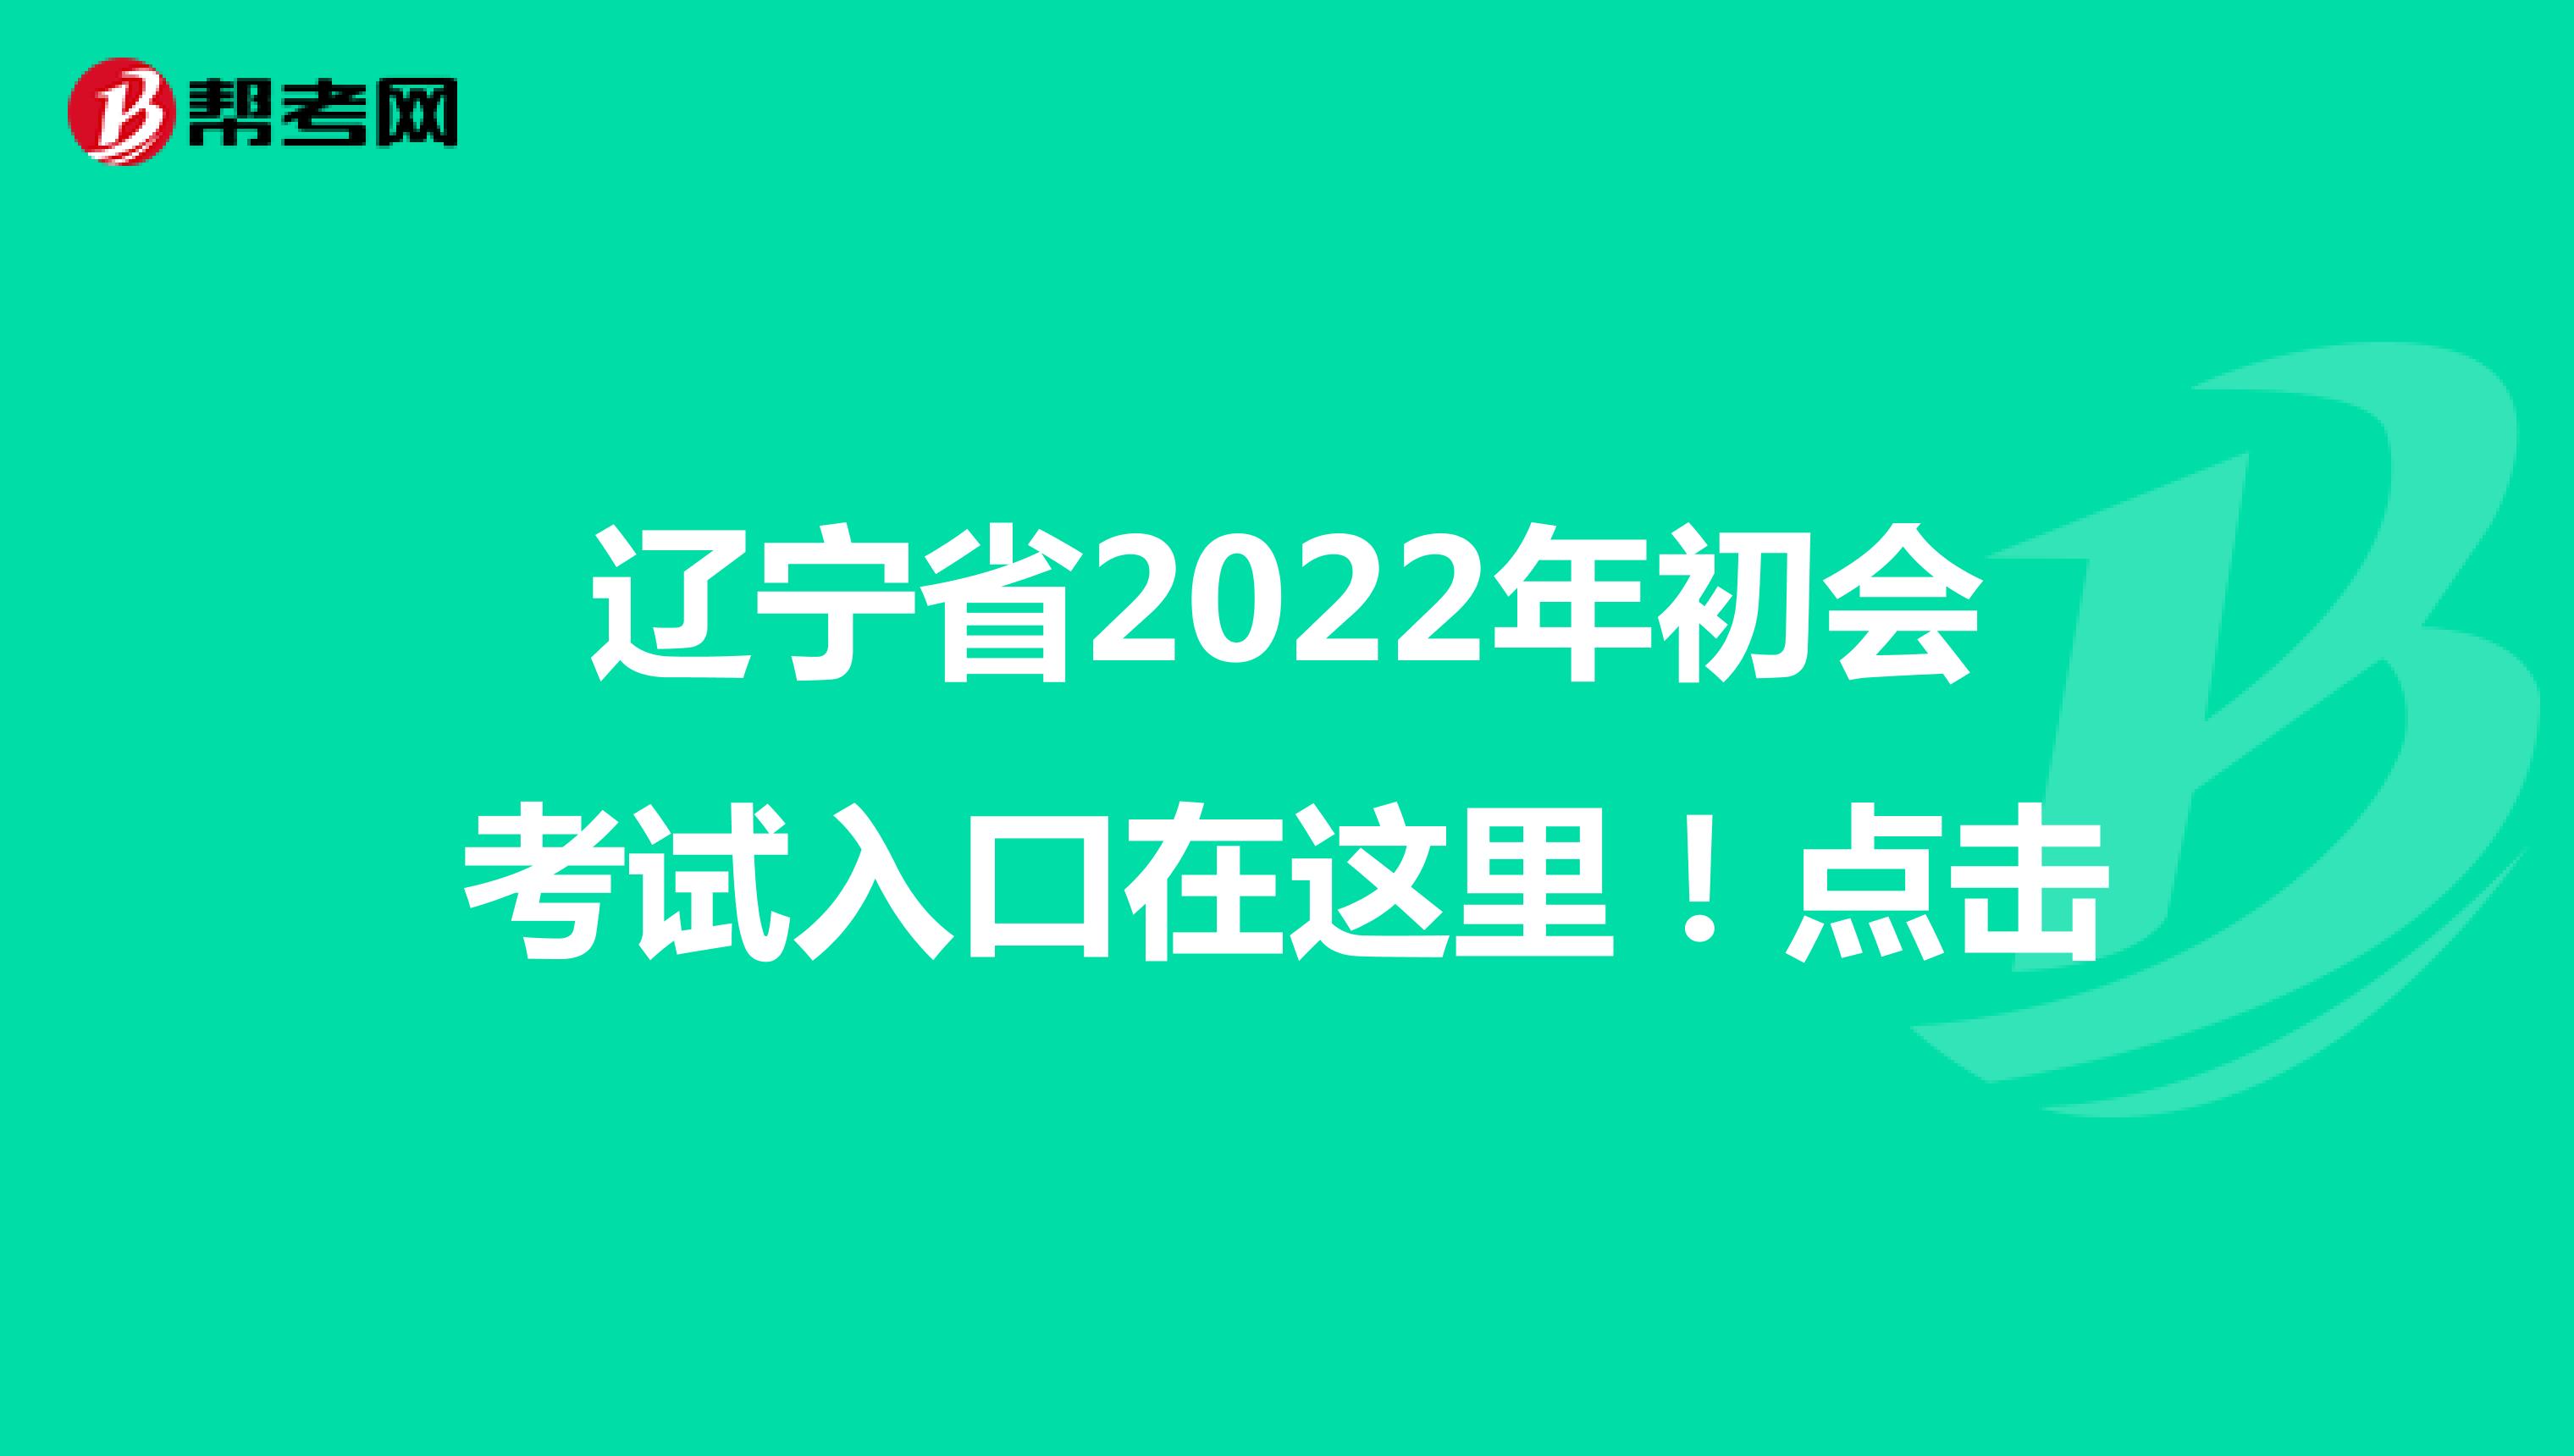 辽宁省2022年初会考试入口在这里！点击